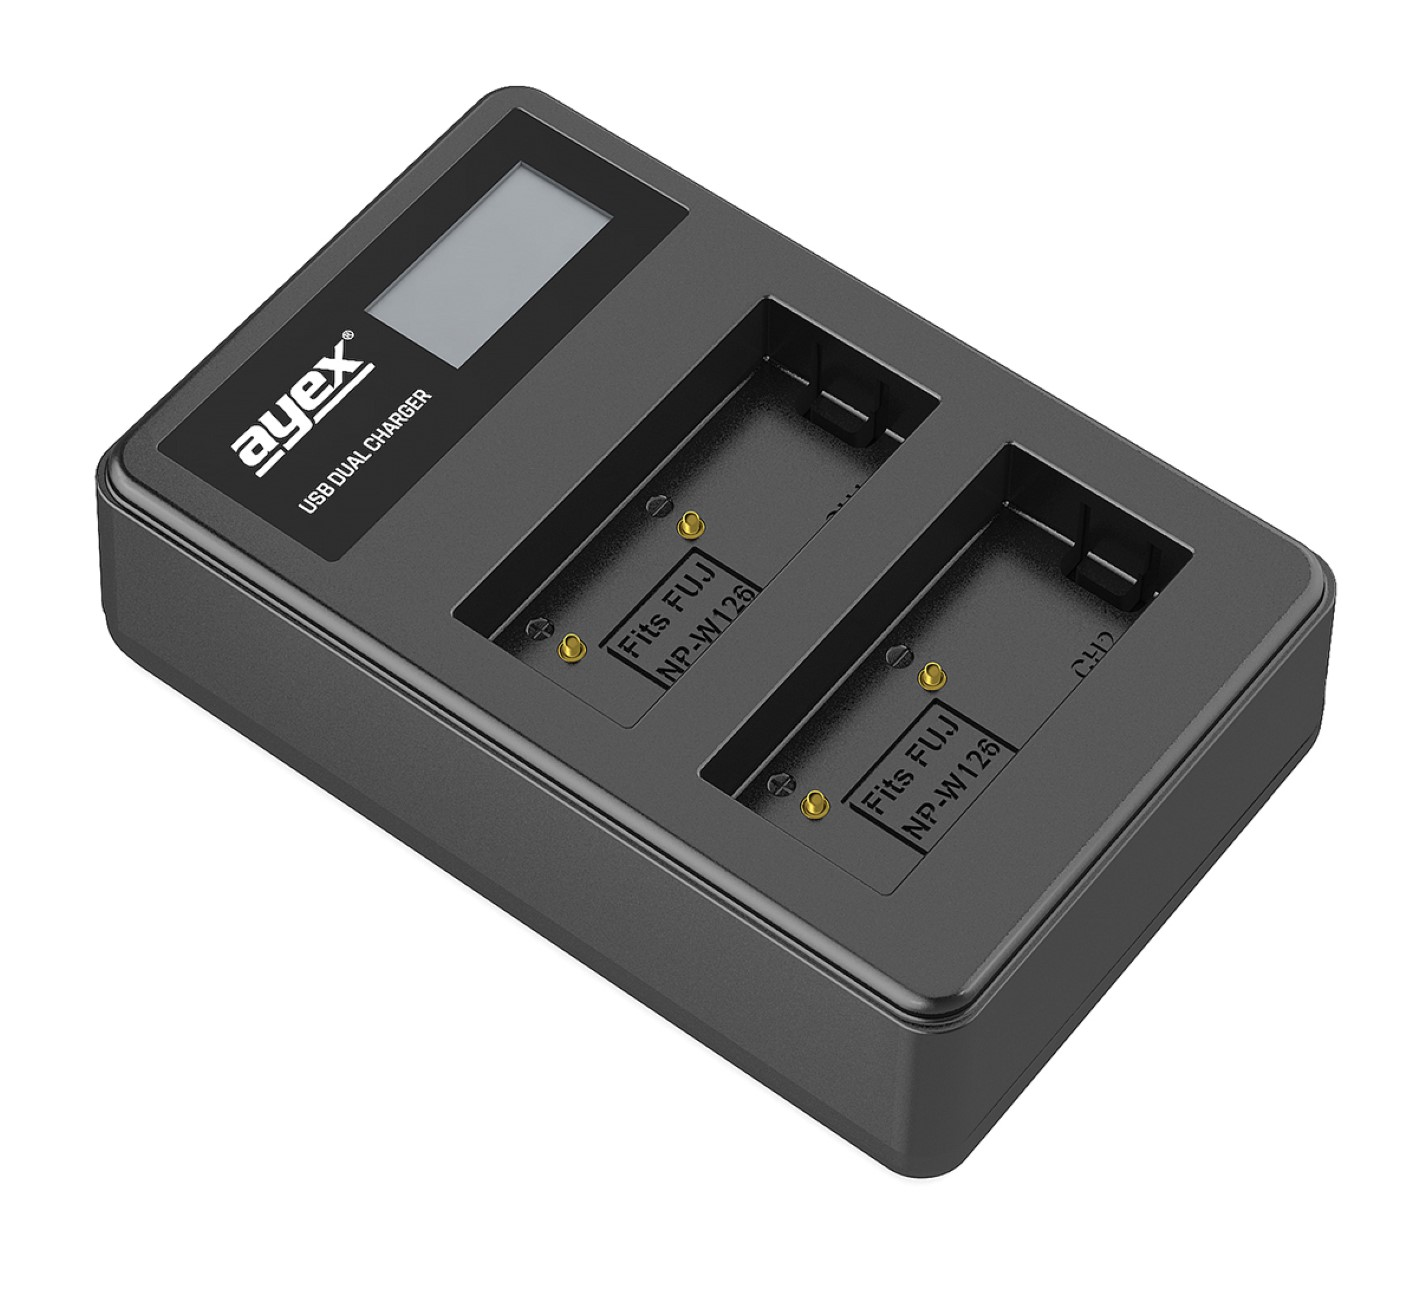 USB Akkus, für Ladegerät Lader, Dual Fujifilm Kamera-Akku Black AYEX NP-W126